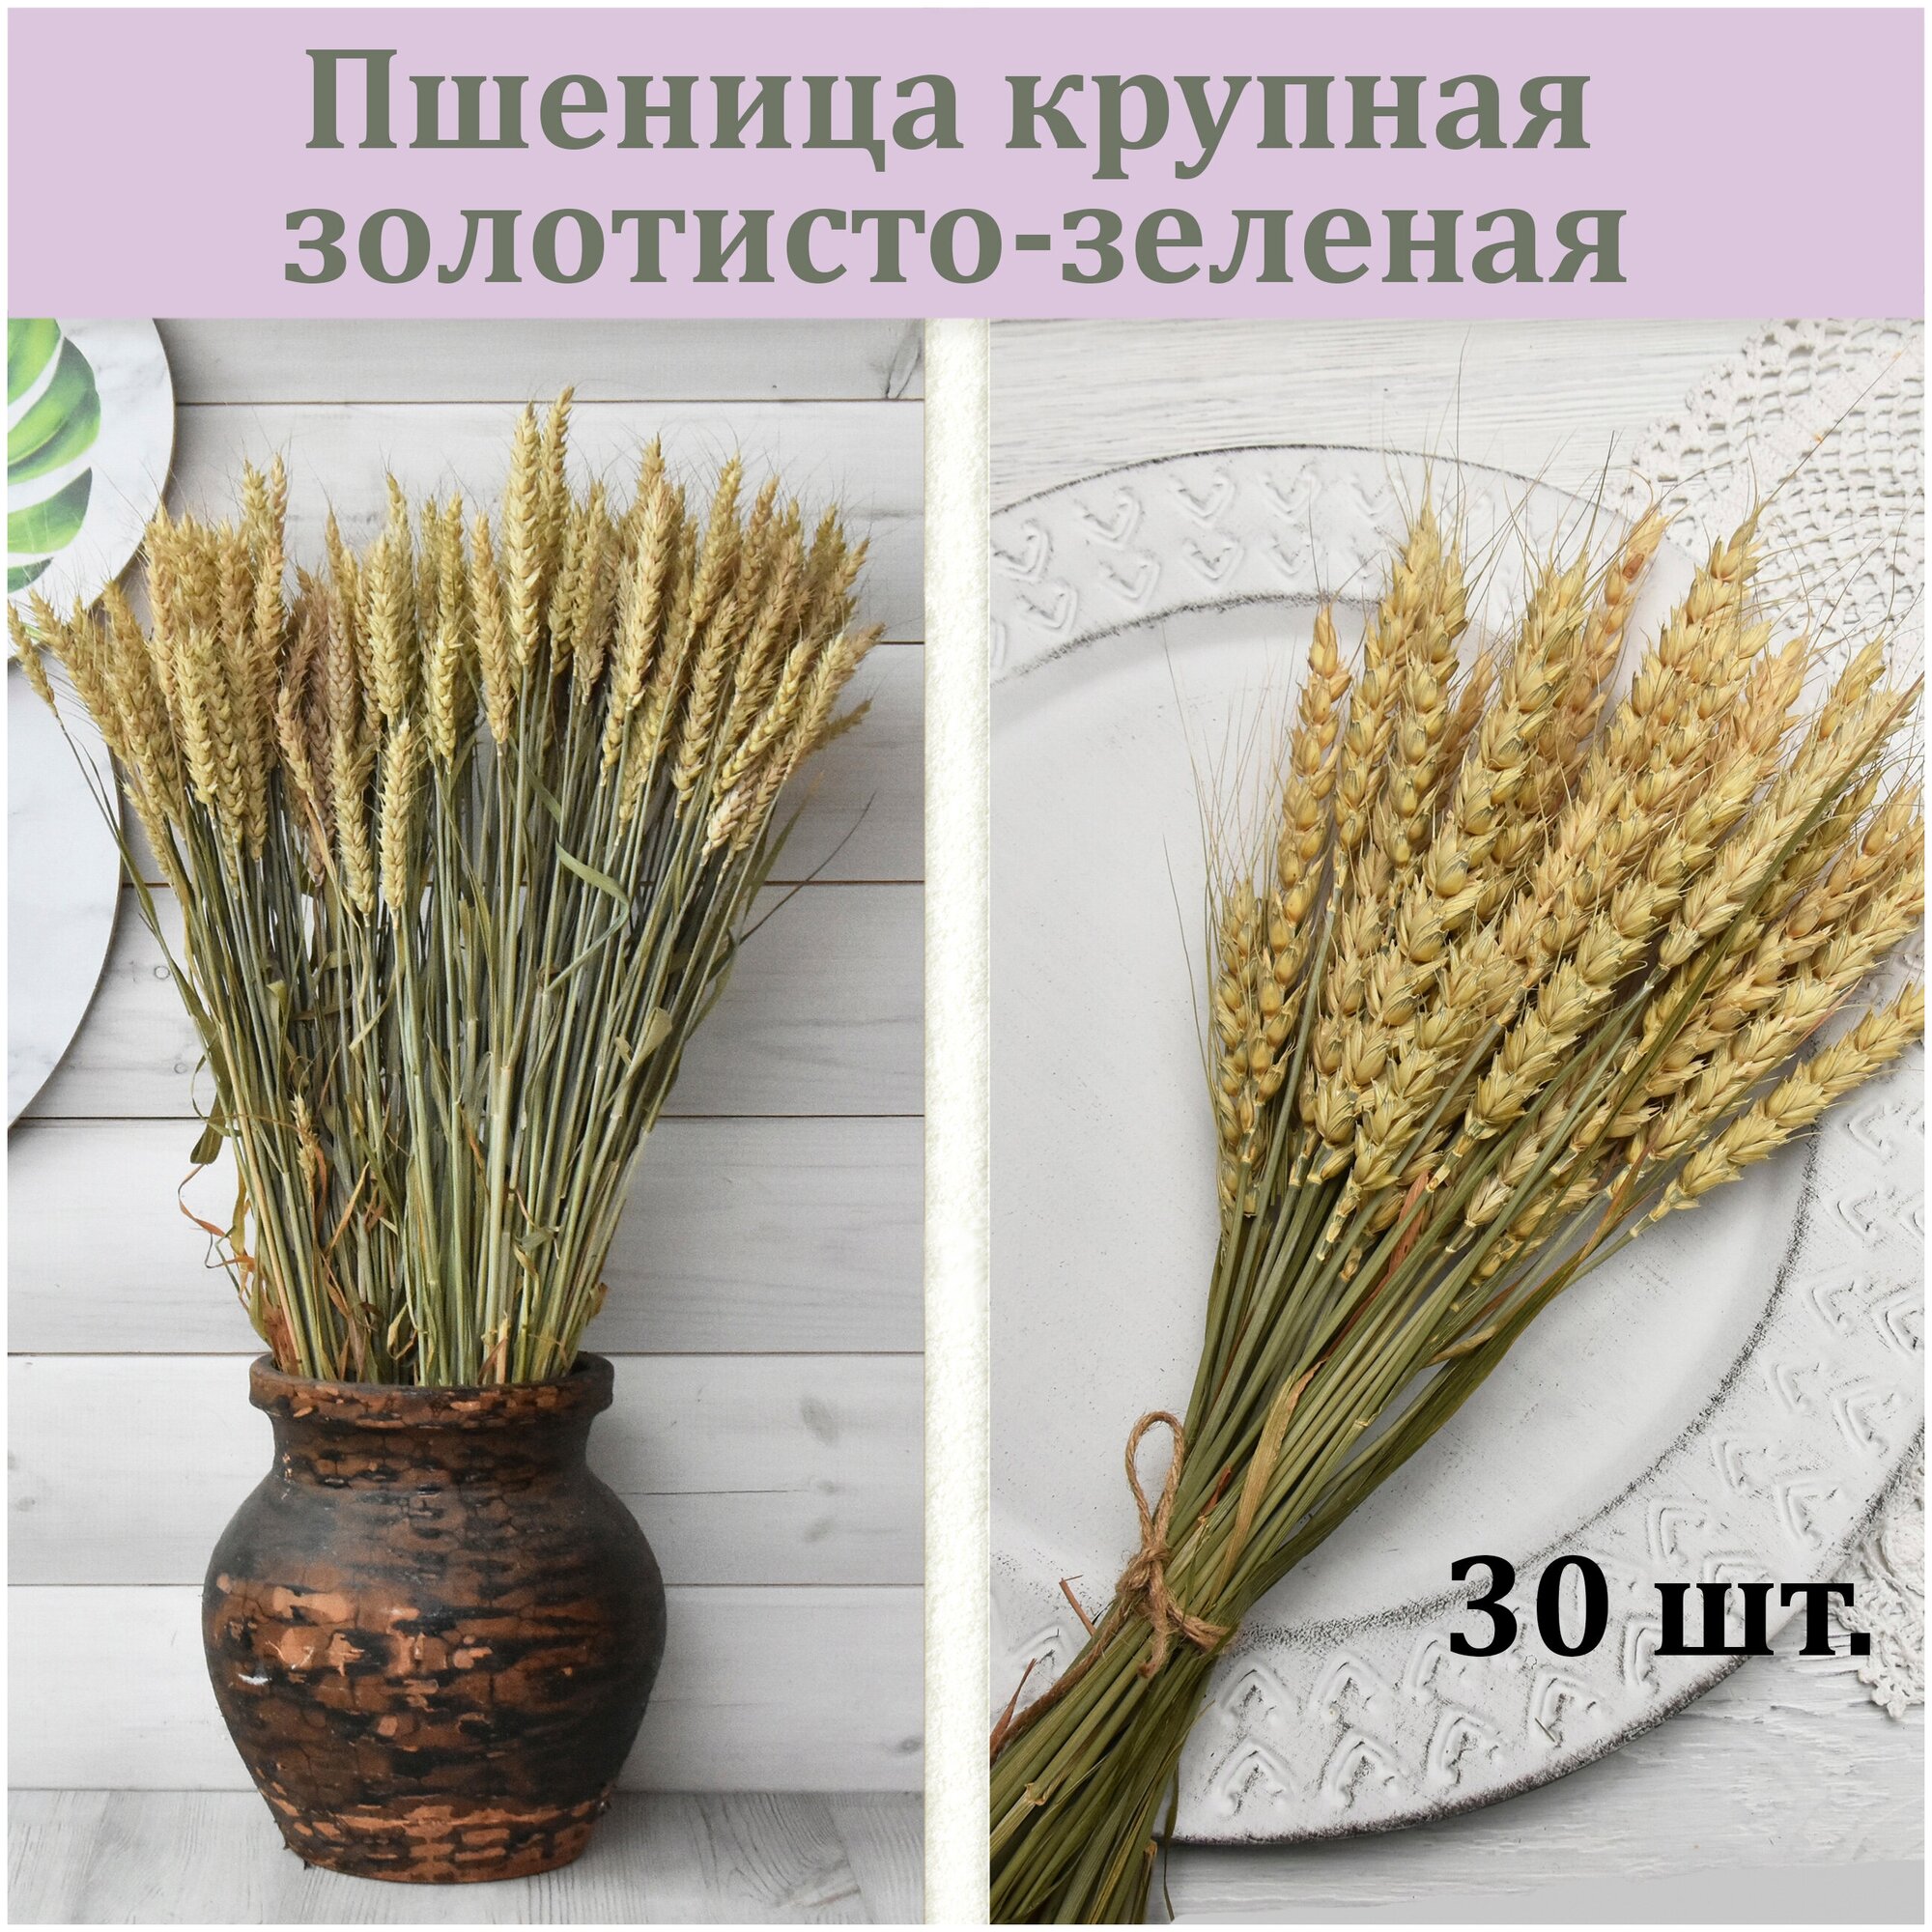 Пшеница крупная золотисто-зеленая 30 штук / Пшеница сухоцвет / Букет из сухоцветов